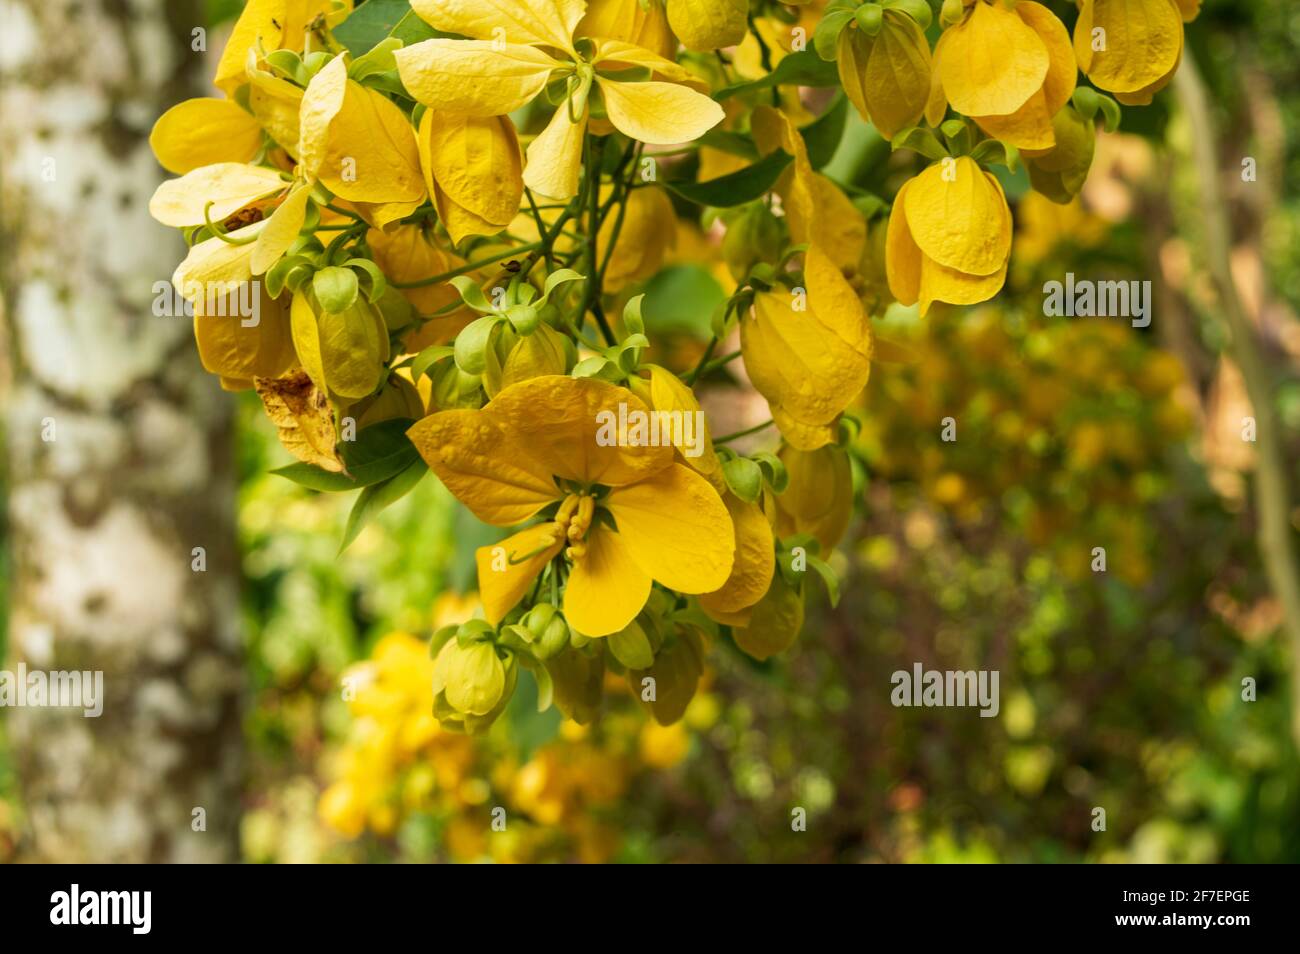 https://c8.alamy.com/compes/2f7epge/comunmente-conocido-como-ducha-dorada-y-es-una-planta-de-floracion-es-una-planta-ornamental-que-florece-a-finales-de-primavera-las-flores-son-de-importancia-ritual-2f7epge.jpg